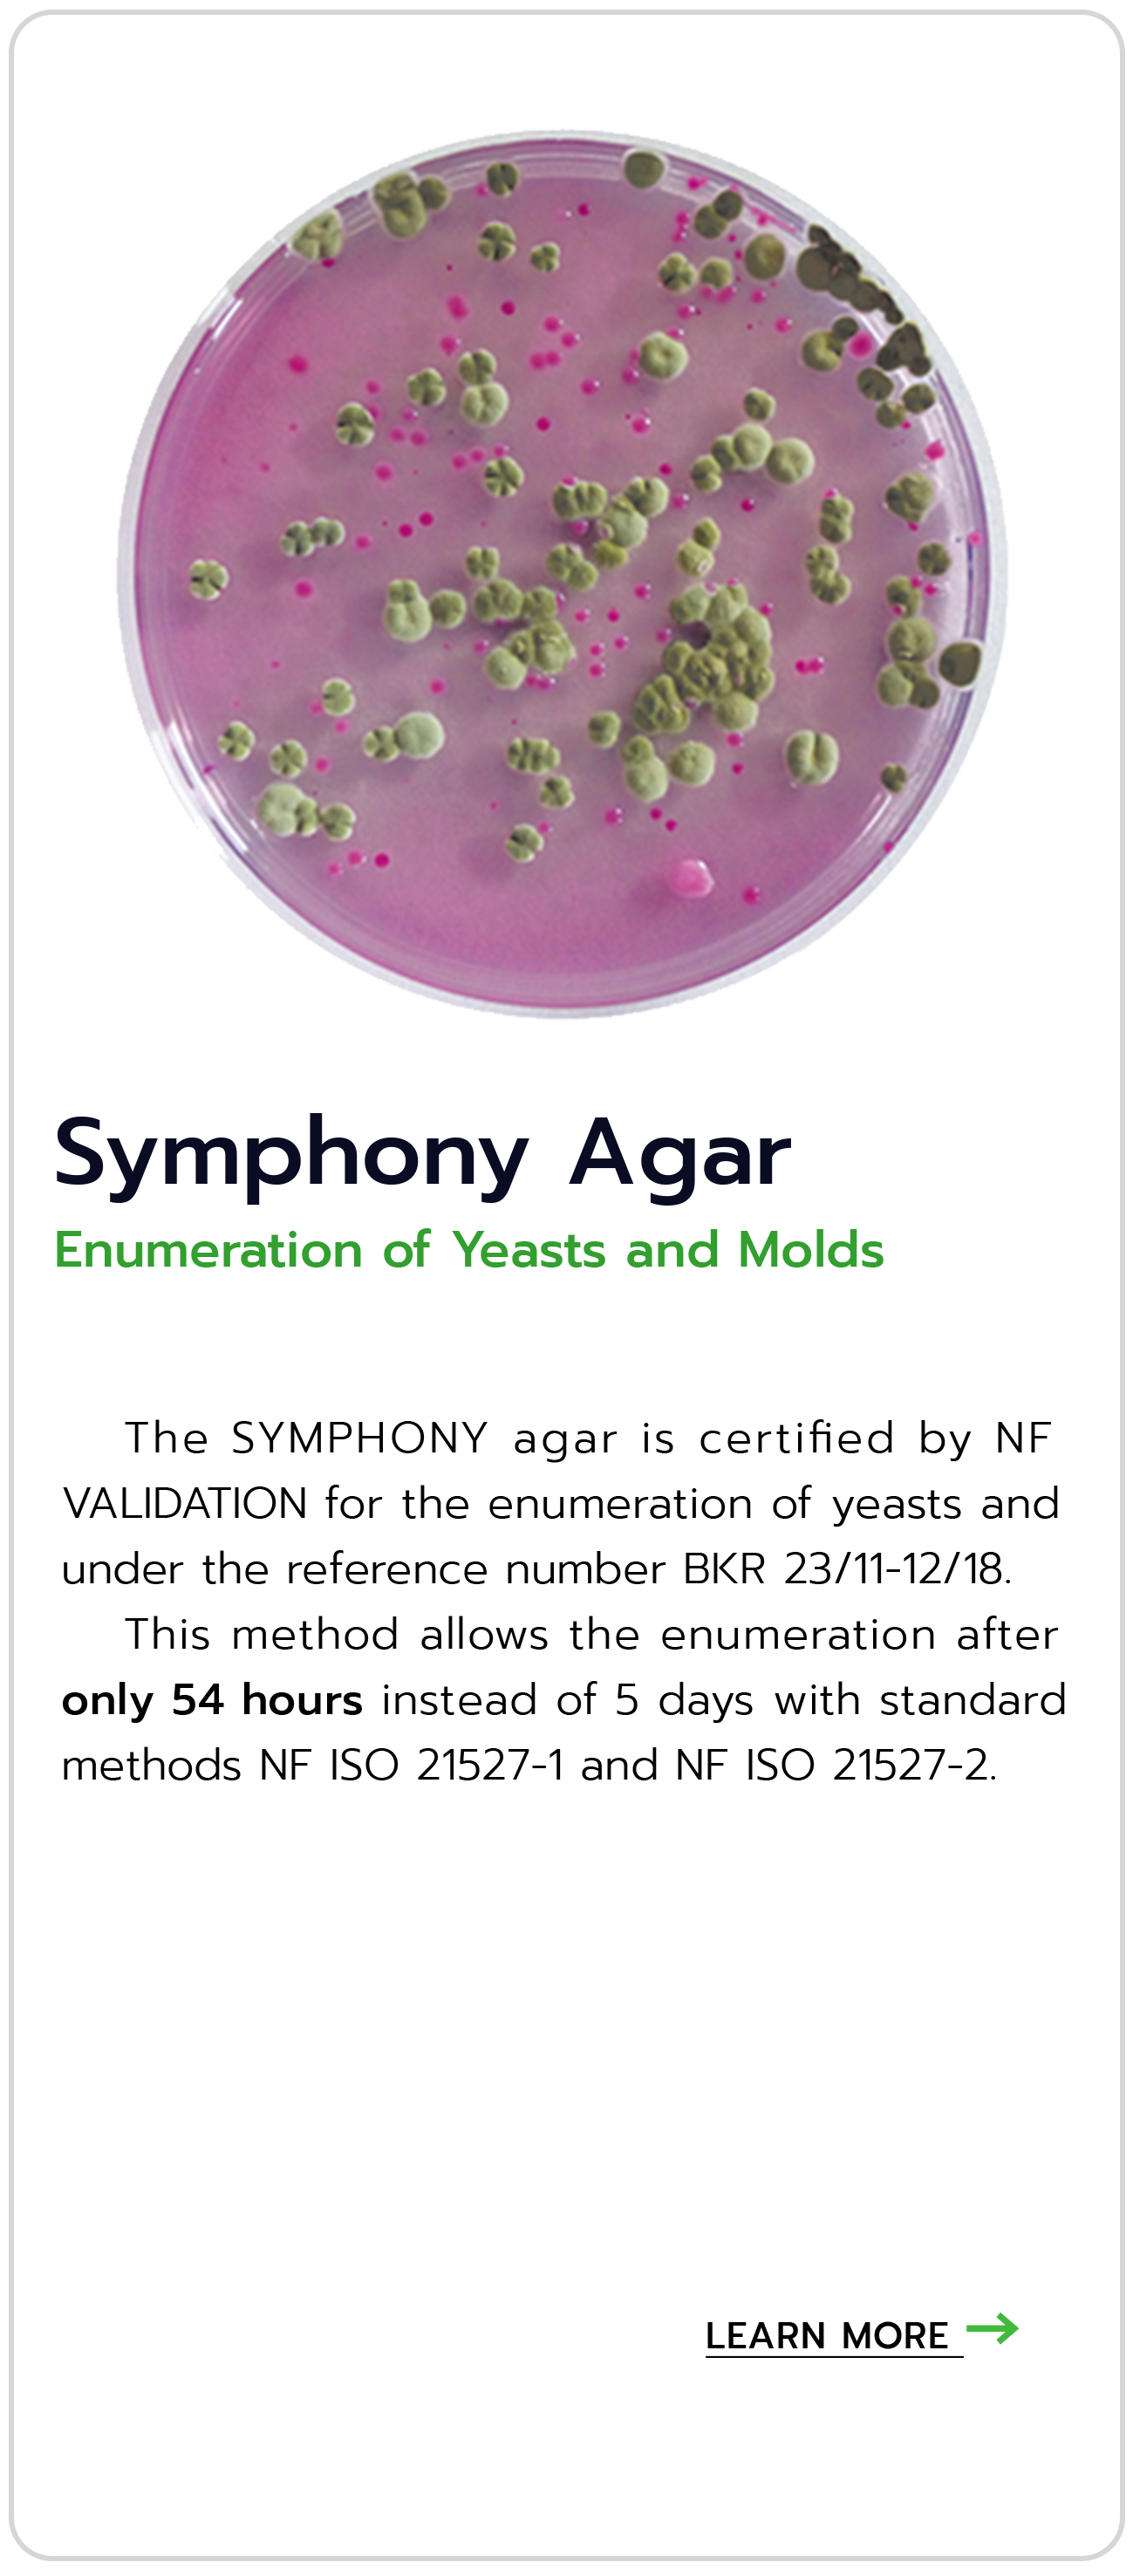 อาหารเลี้ยงเชื้อ Symphony agar allows the enumeration of yeasts and molds in all human and animal food products #BIOKAR biokar